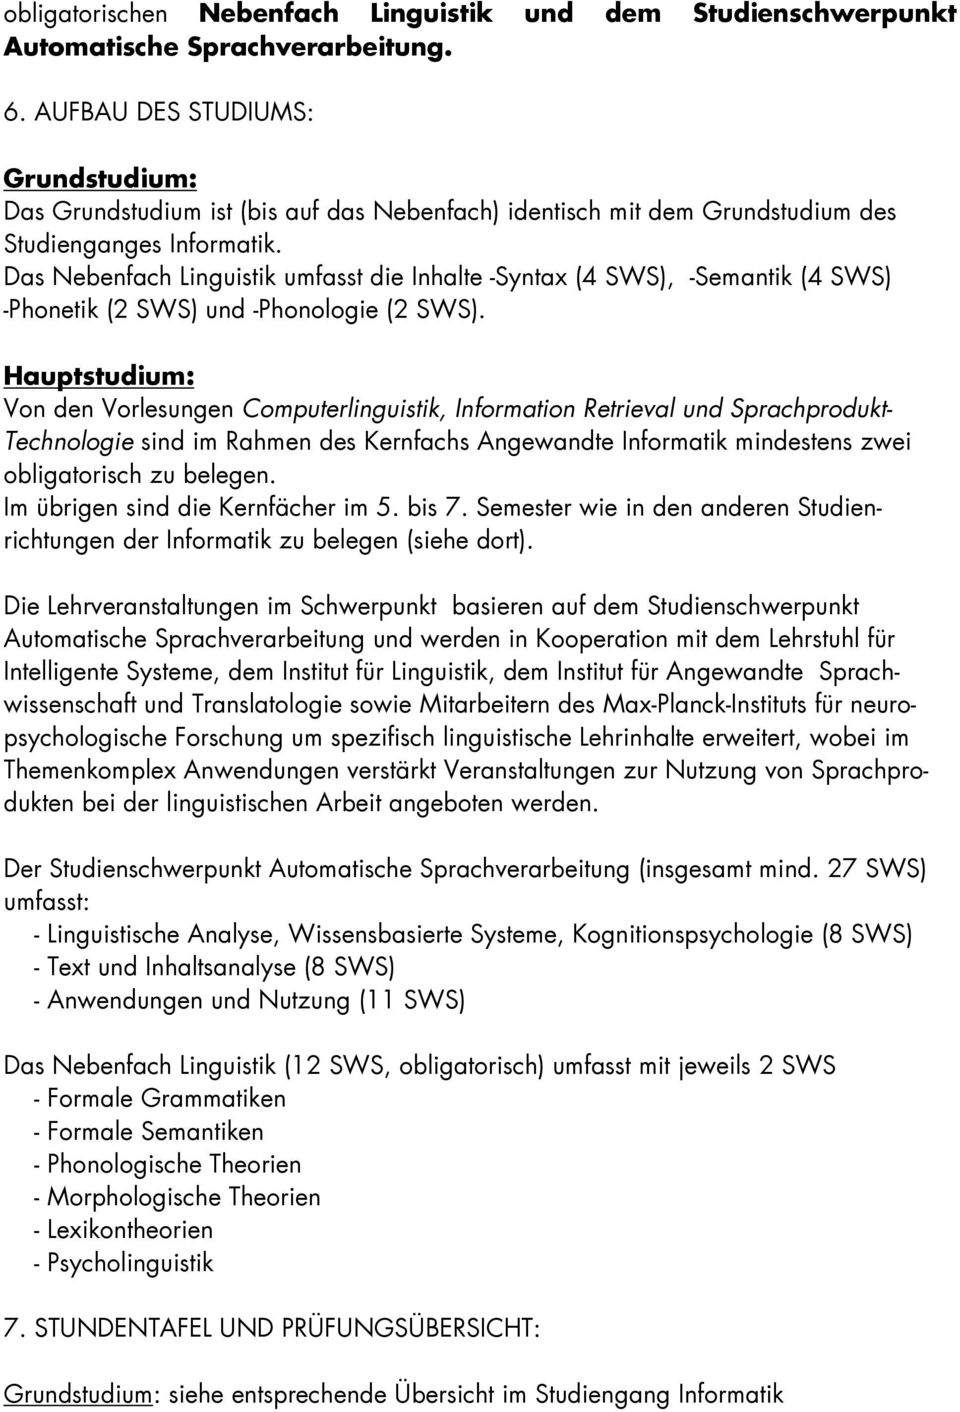 Das Nebenfach Linguistik umfasst die Inhalte -Syntax (4 SWS), -Semantik (4 SWS) -Phonetik (2 SWS) und -Phonologie (2 SWS).